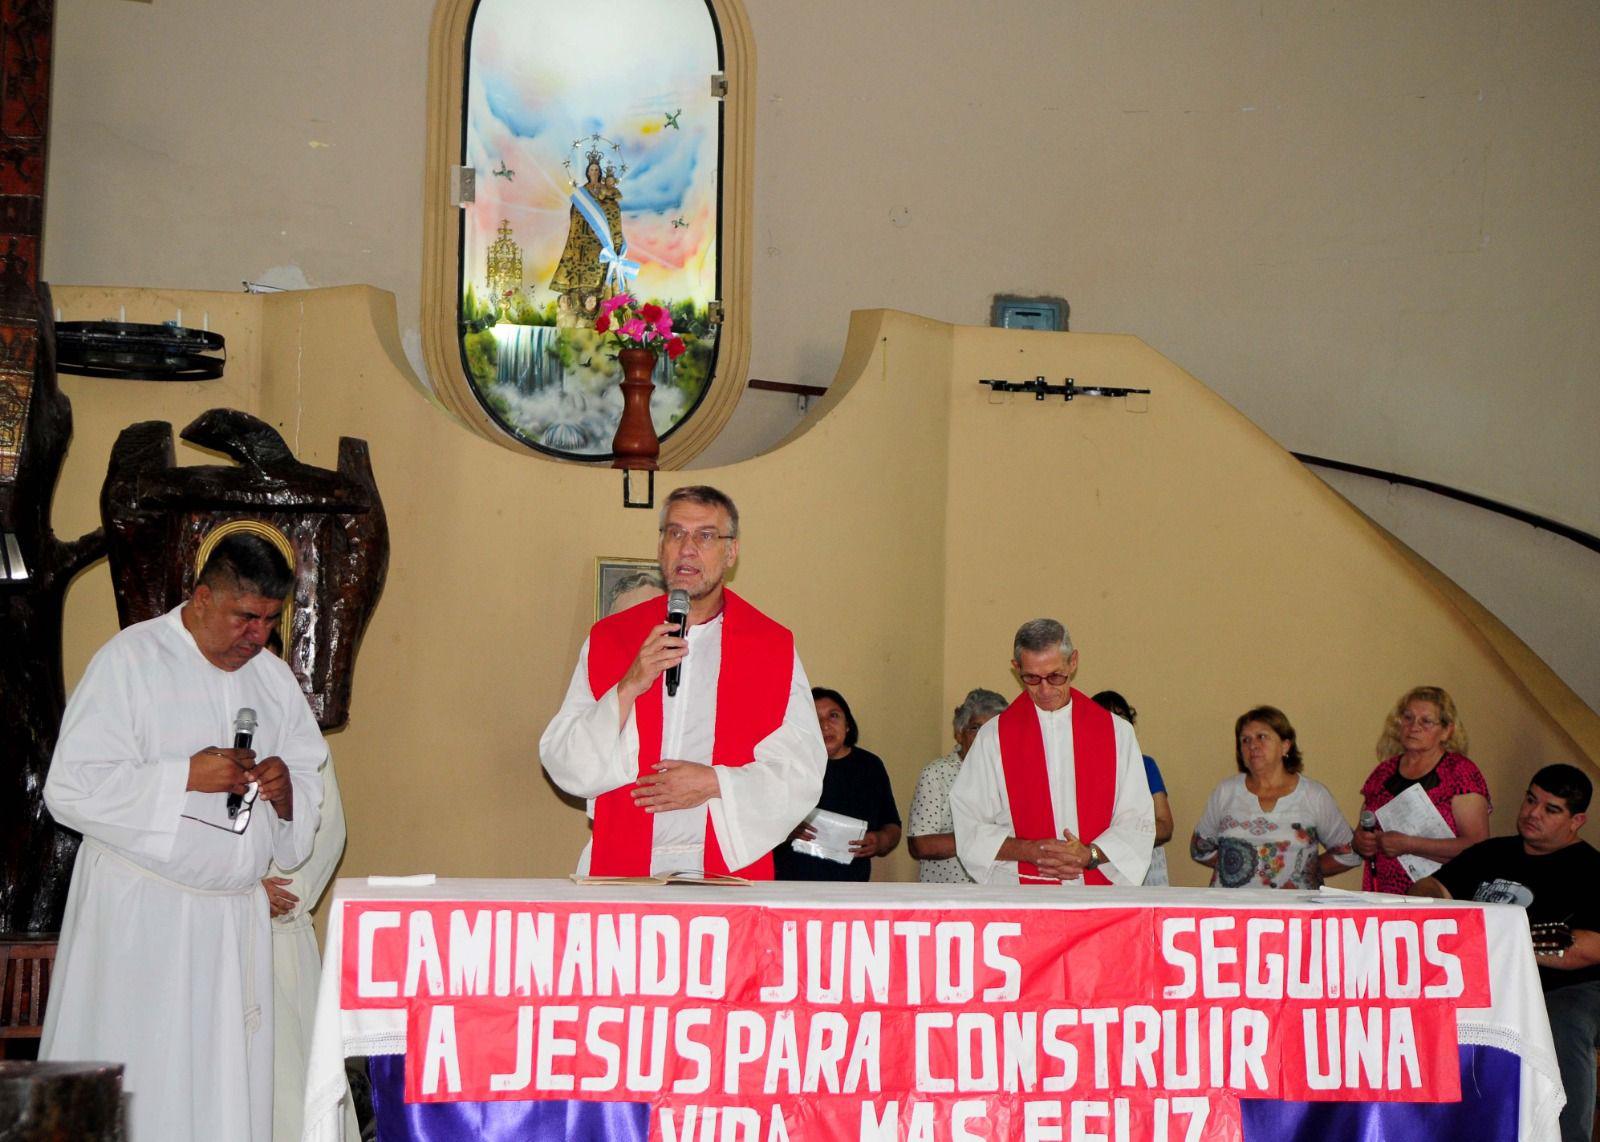 TRADICIÓN La Adoración de la Cruz es una tradición que guardan celosamente los loretanos